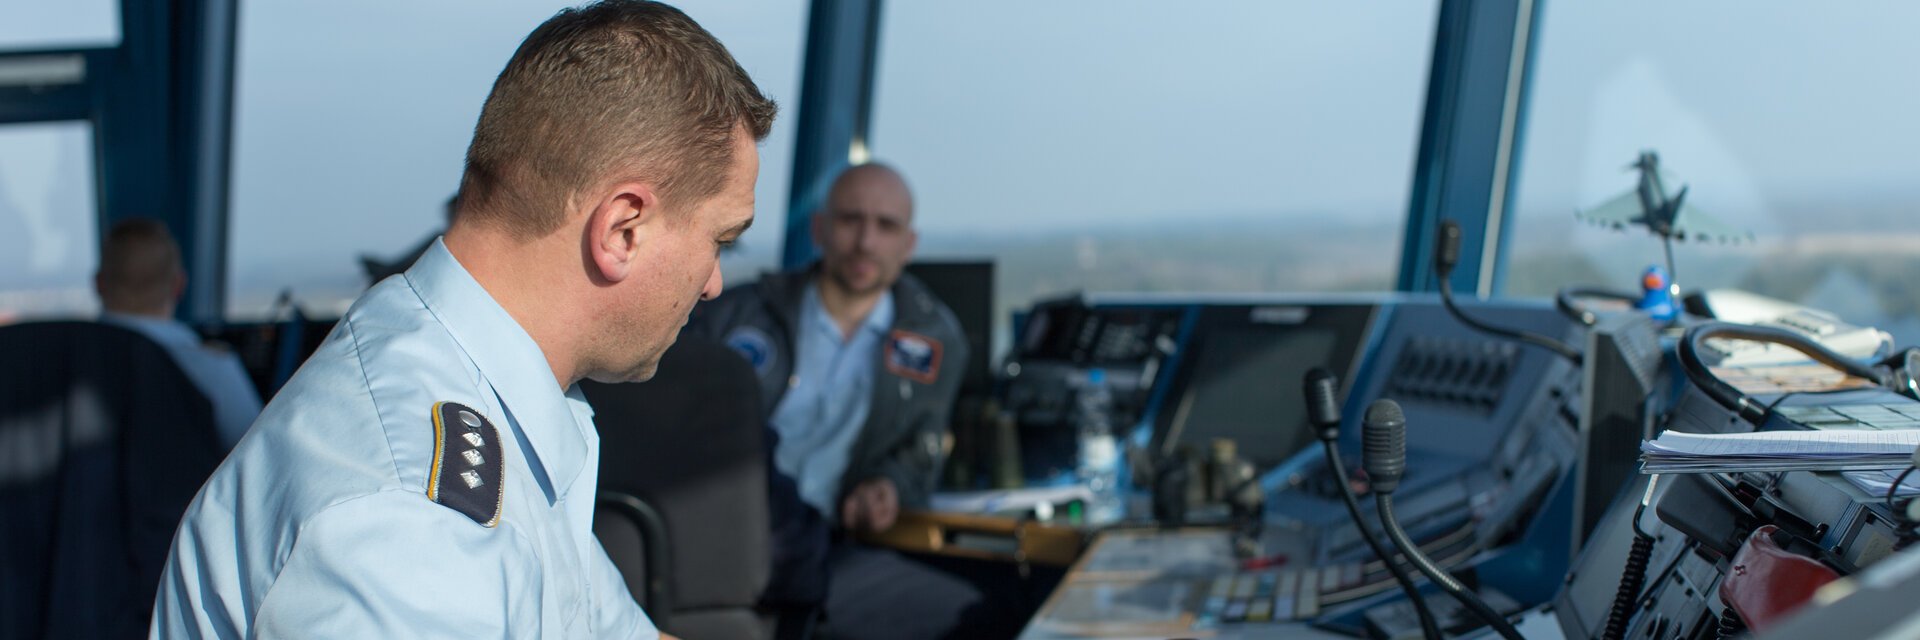 Fluglotse in Uniform sitzt im Tower eines Flugplatzes und koordiniert die Flugbewegungen.